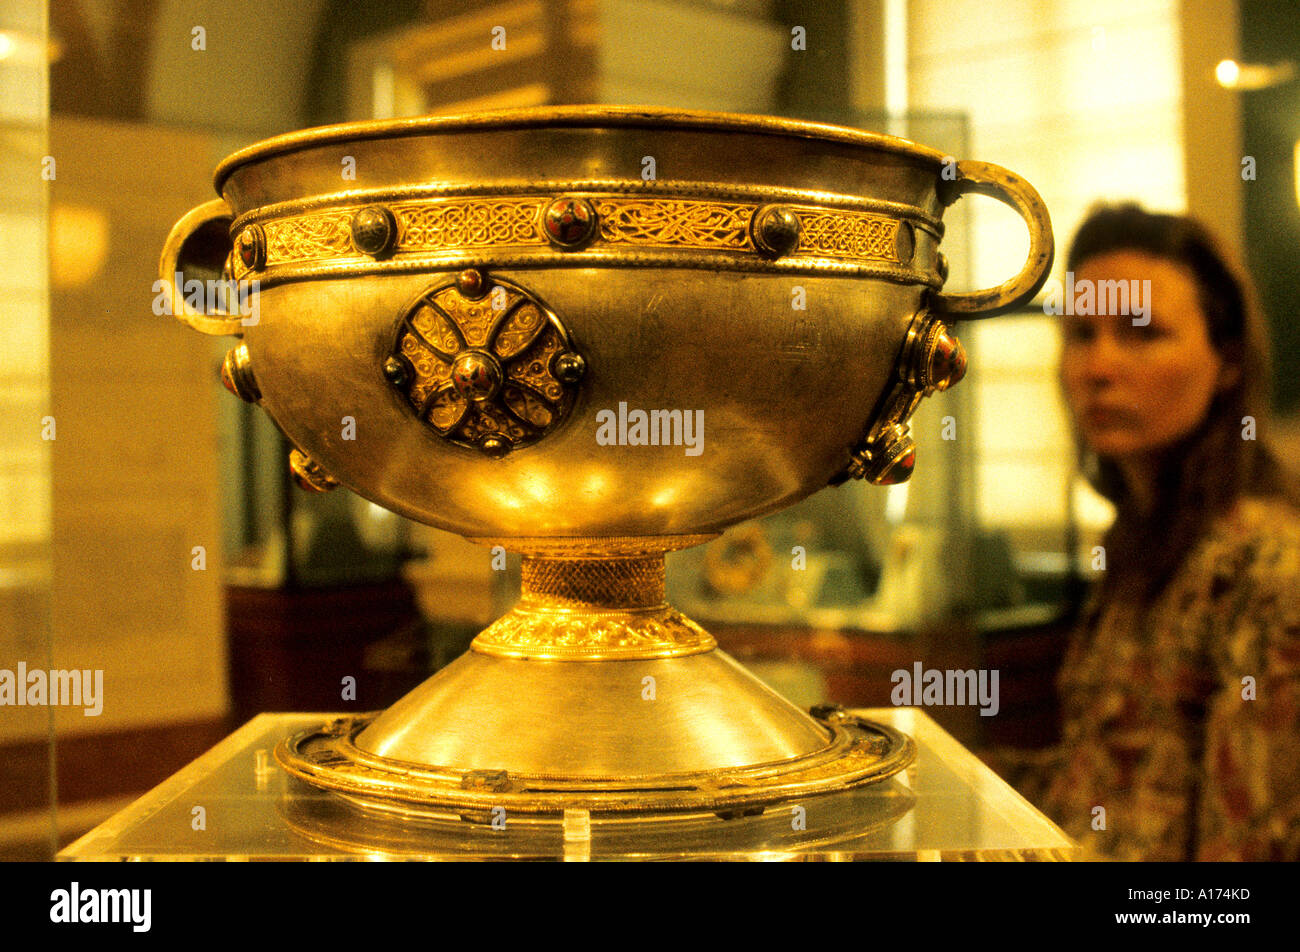 Dublin musée plat bol d'or au Moyen Âge en Irlande Banque D'Images